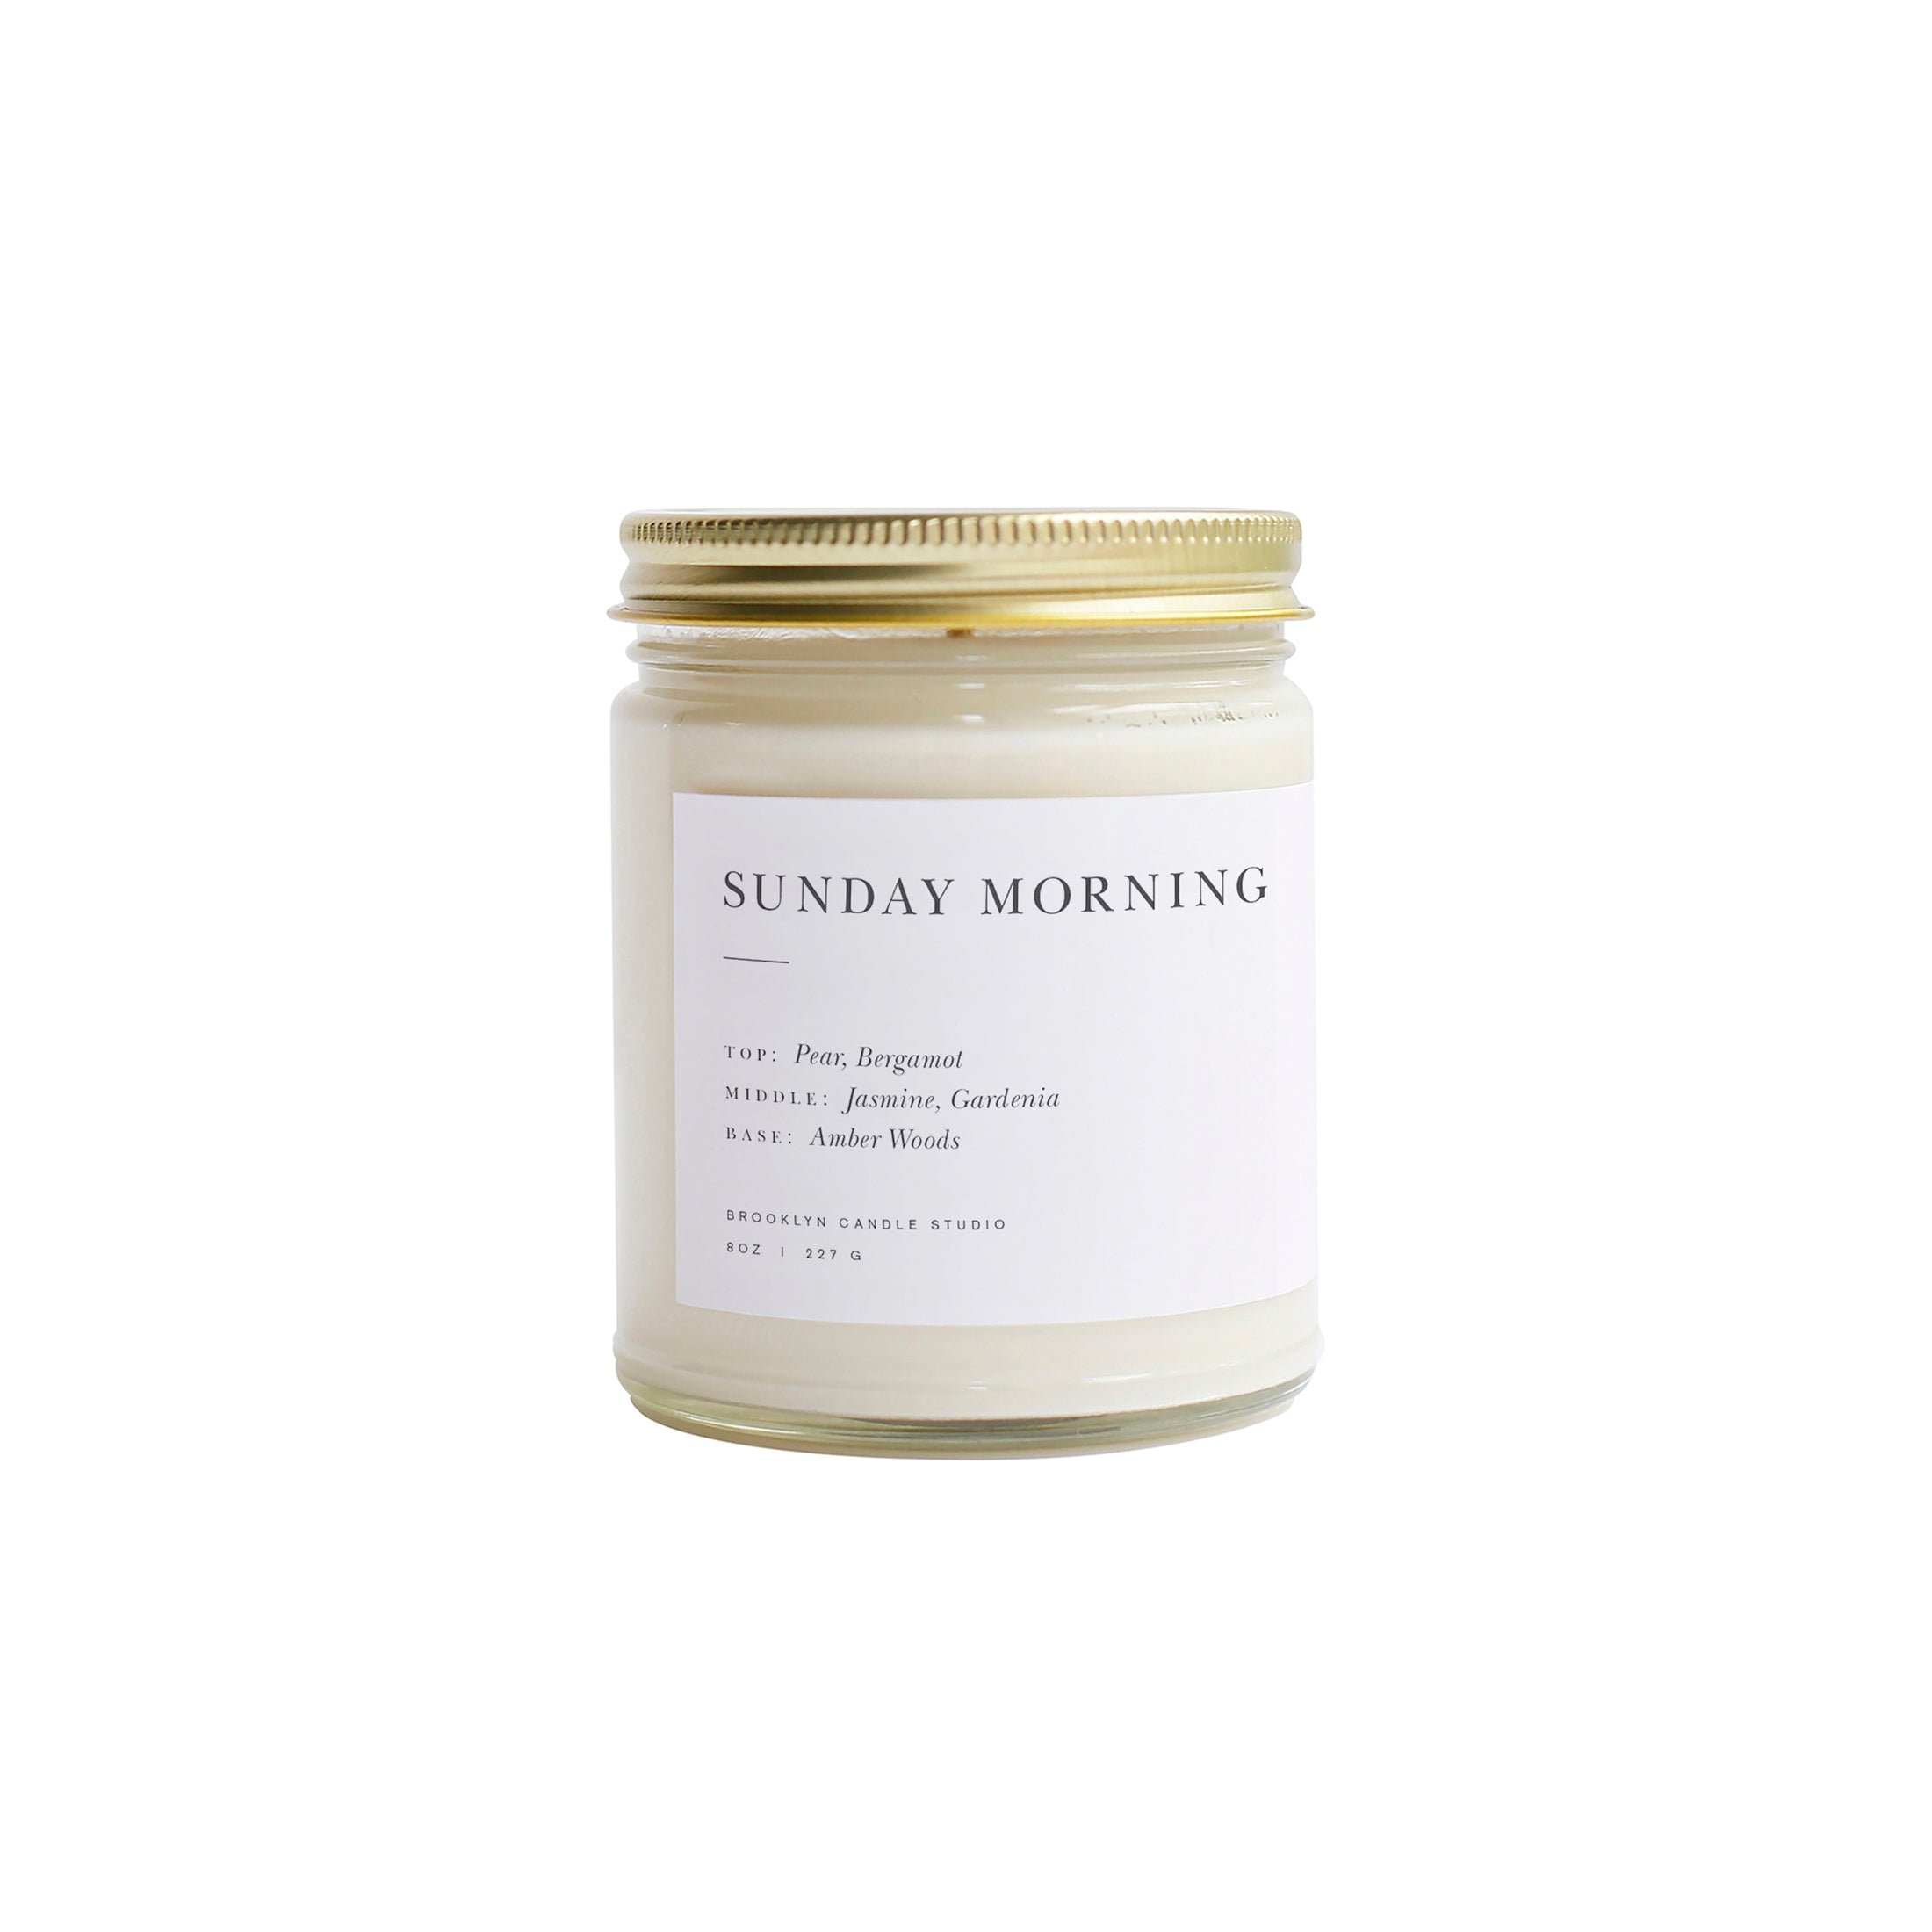 Herring & Bones - Concept Store Joyeux - Brooklyn Candle Studio - Bougies Parfumées - Bougie Minimalist "Sunday Morning"